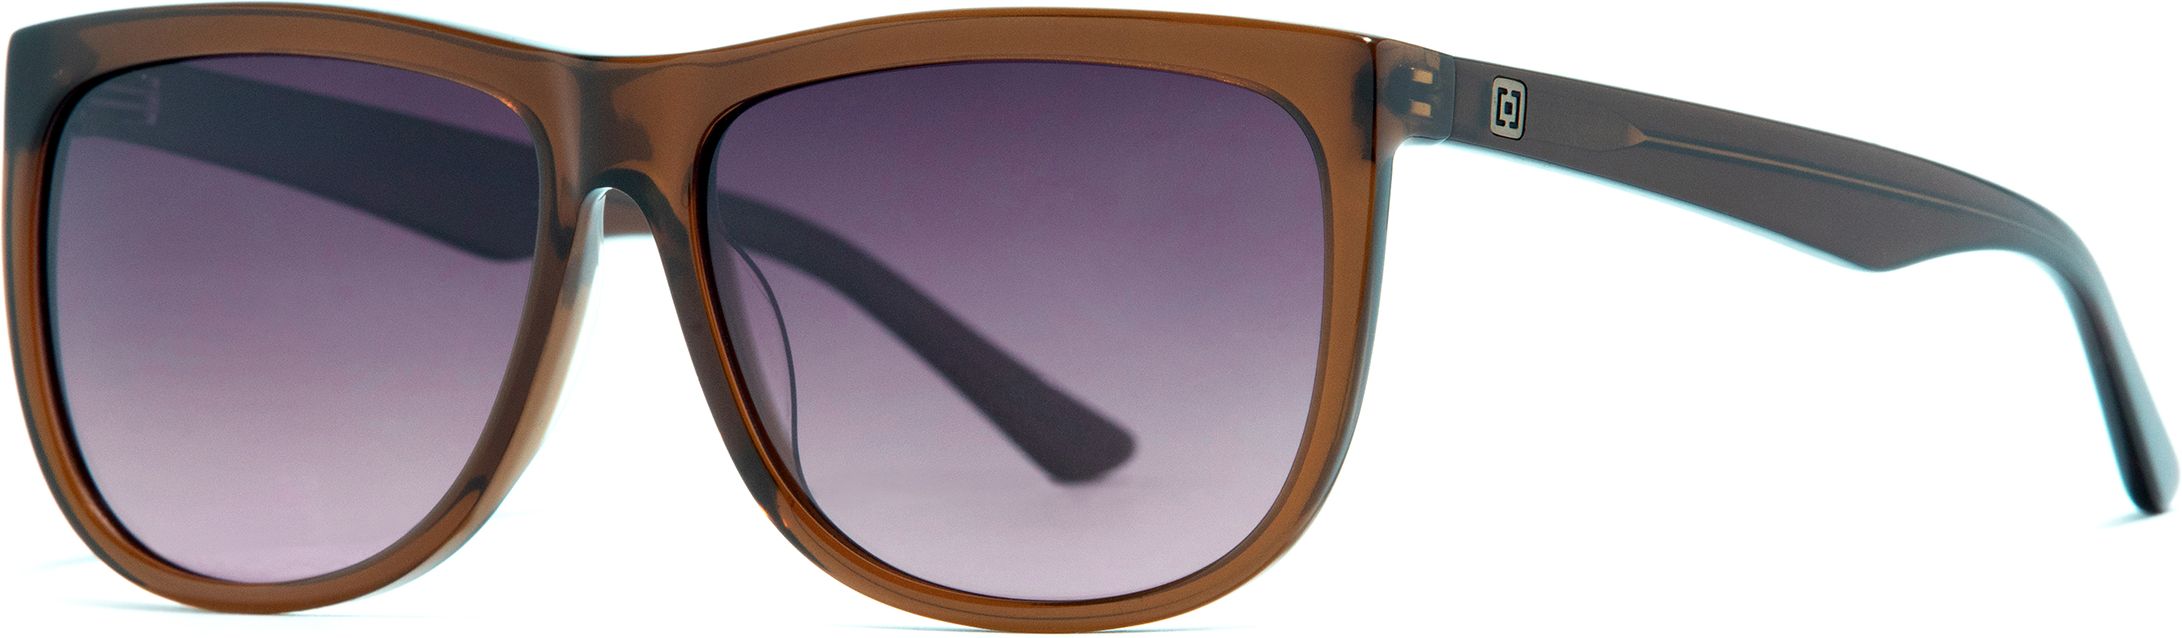 sluneční brýle HORSEFEATHERS GABE SUNGLASSES Gloss Bronze/Violet Fade